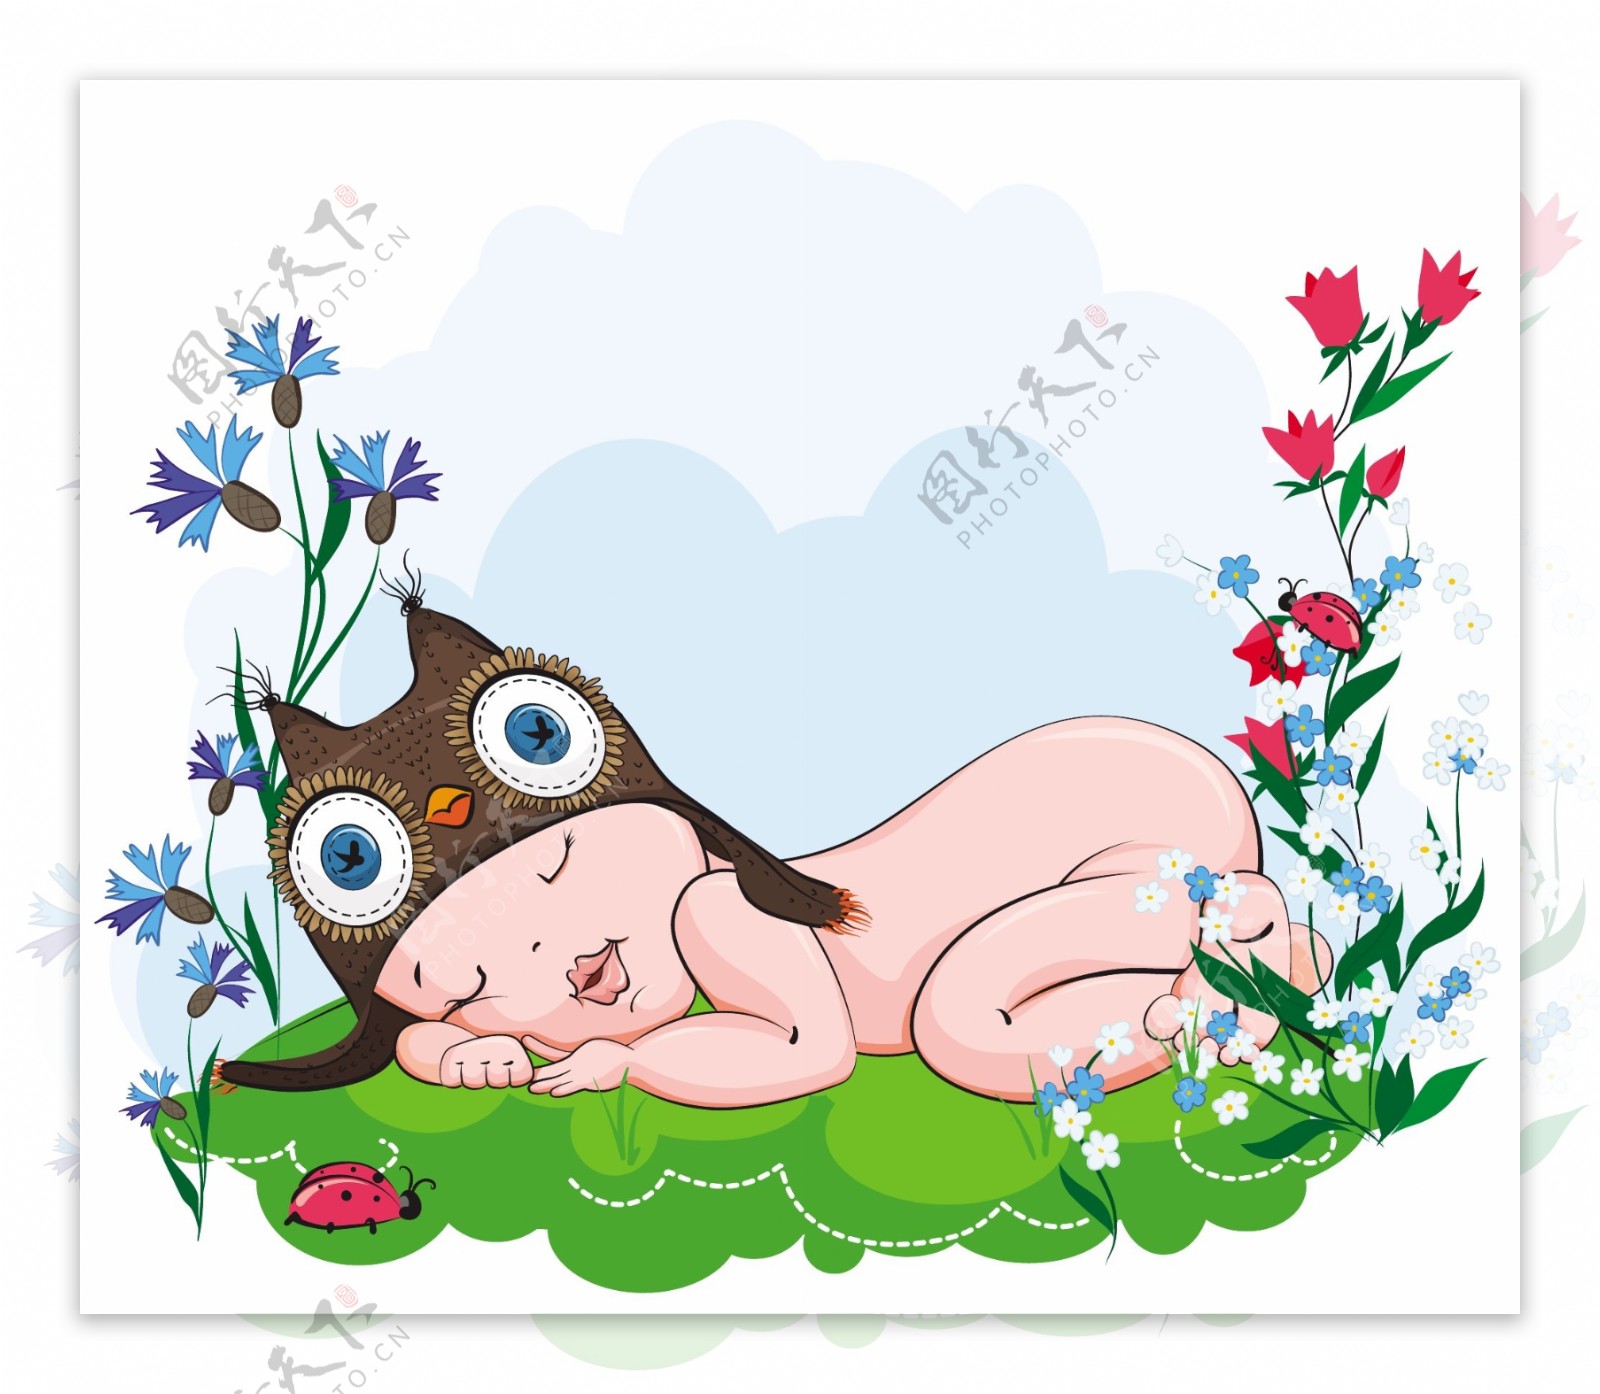 戴猫头鹰帽子睡觉的宝宝插画矢量素材